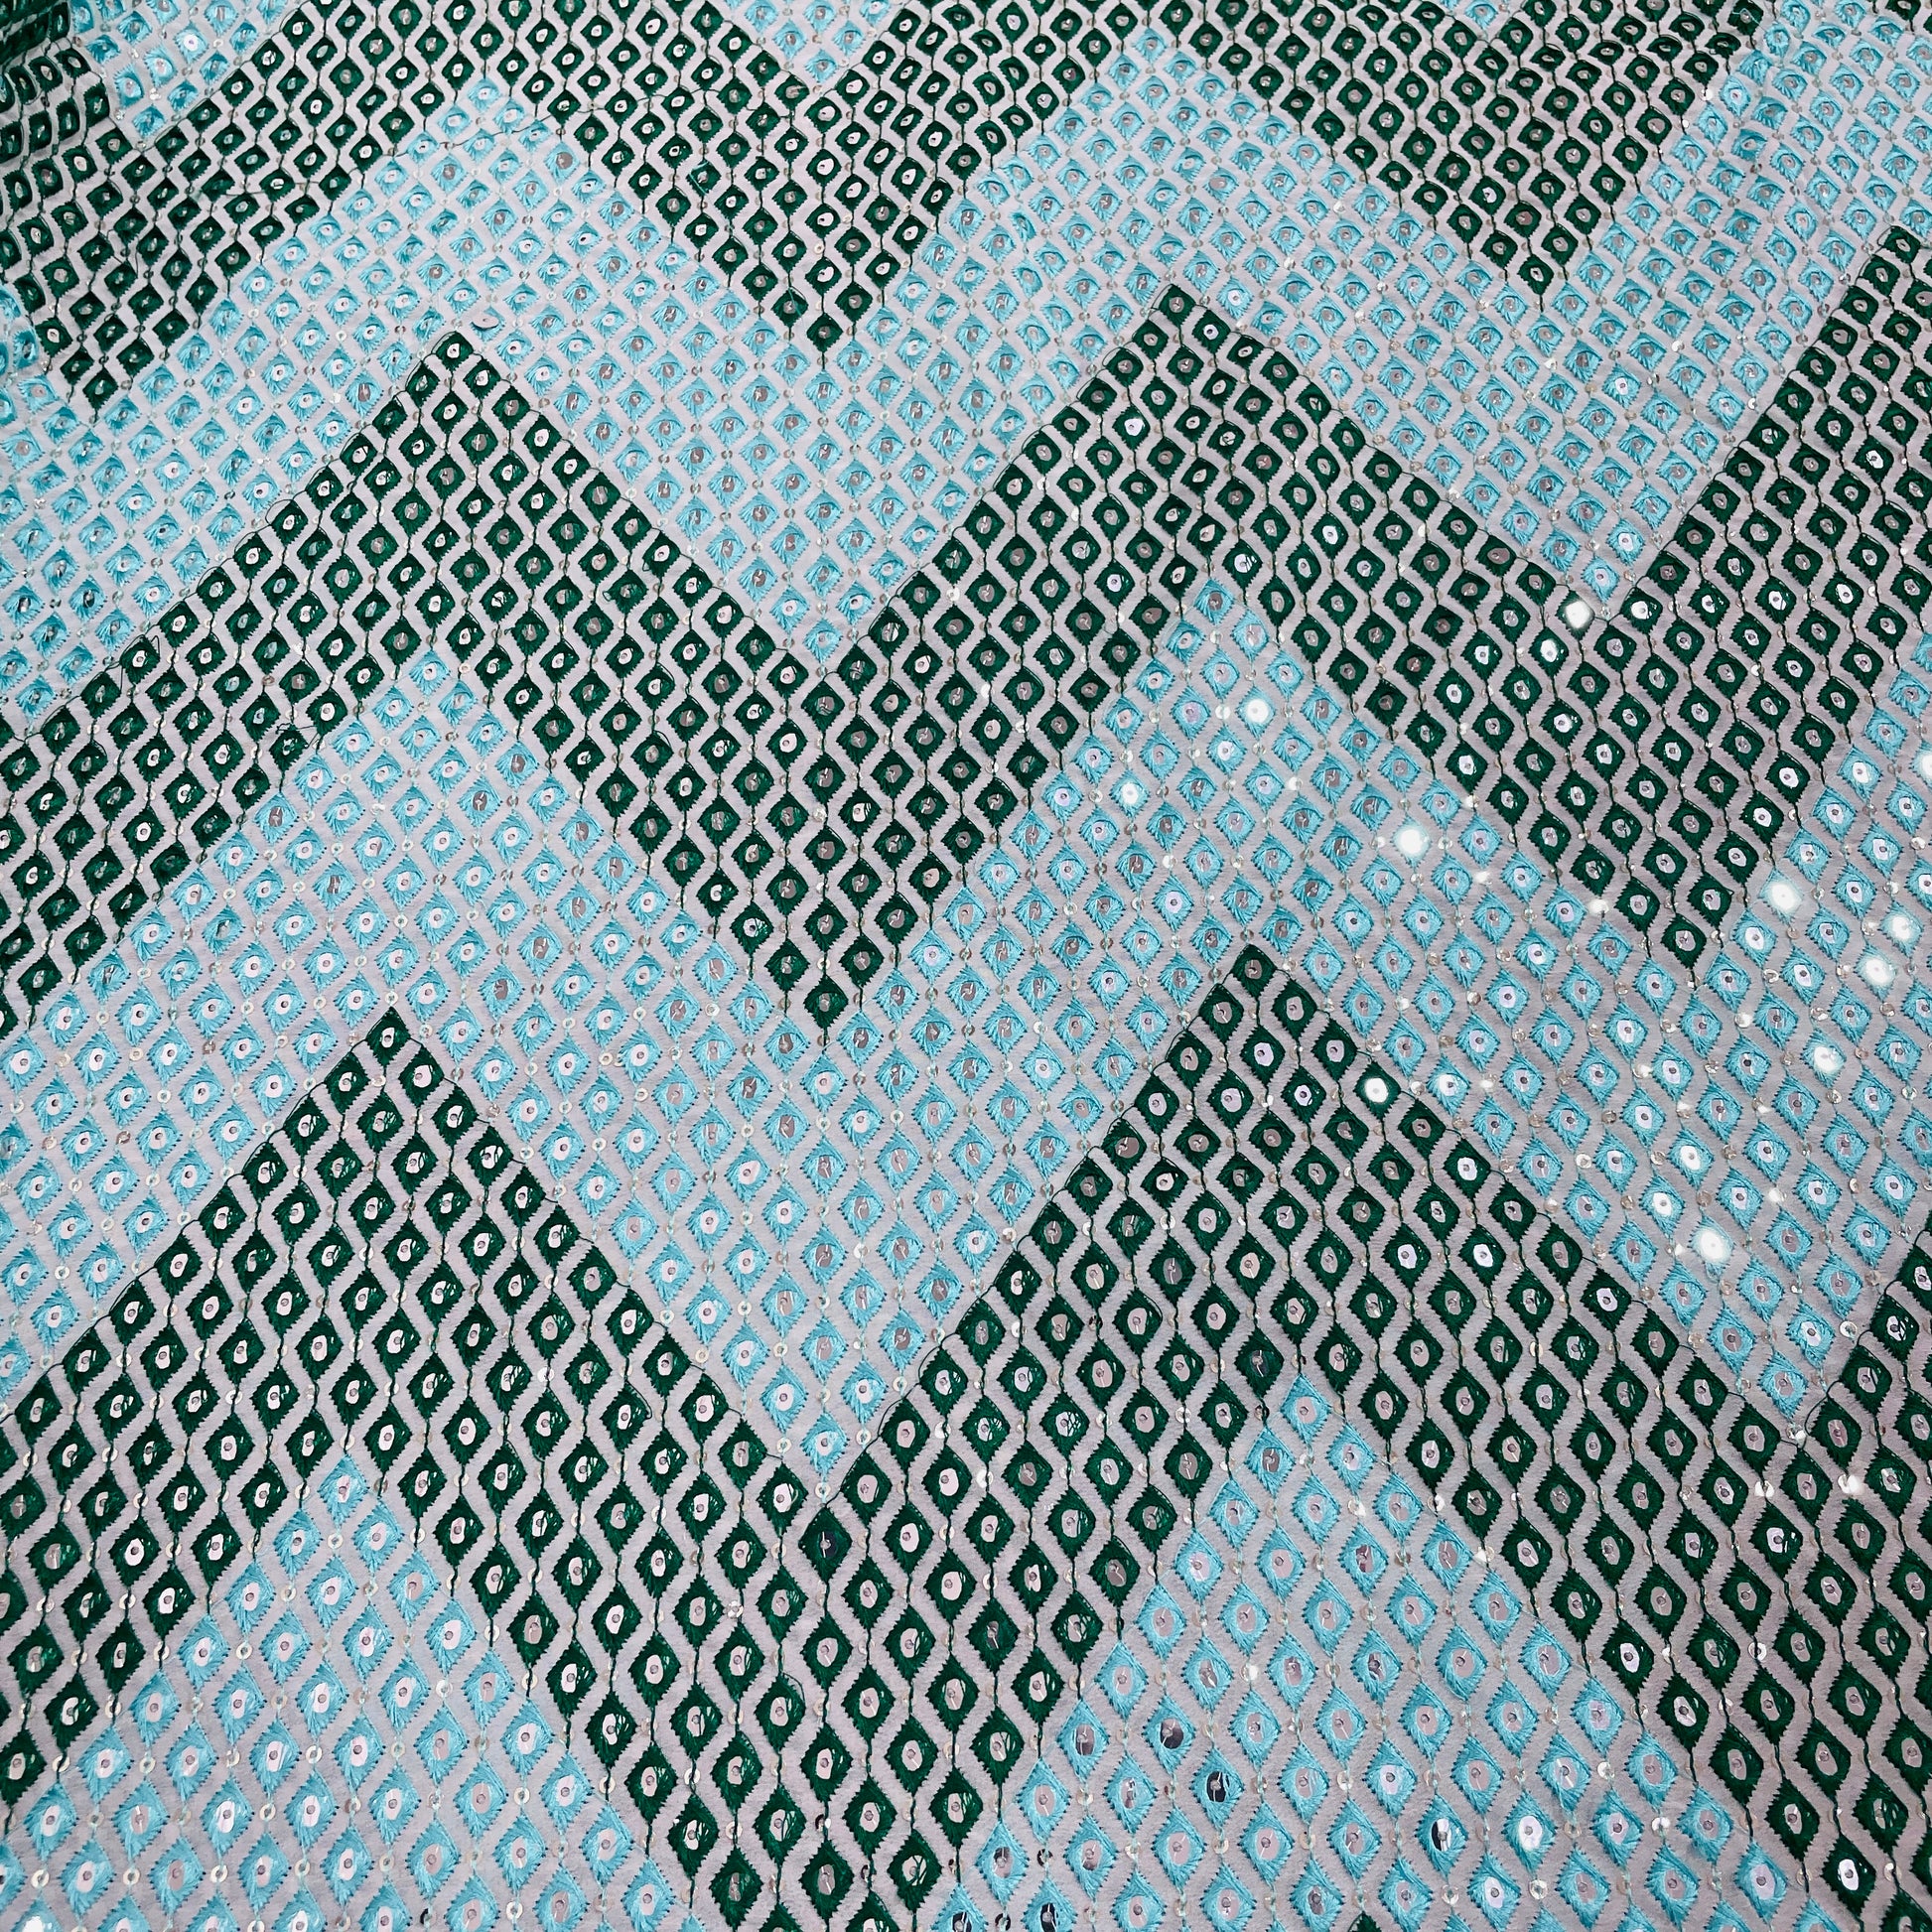 Sea Blue & Dark Green Chevron Mirror Embroidery Georgette Fabric